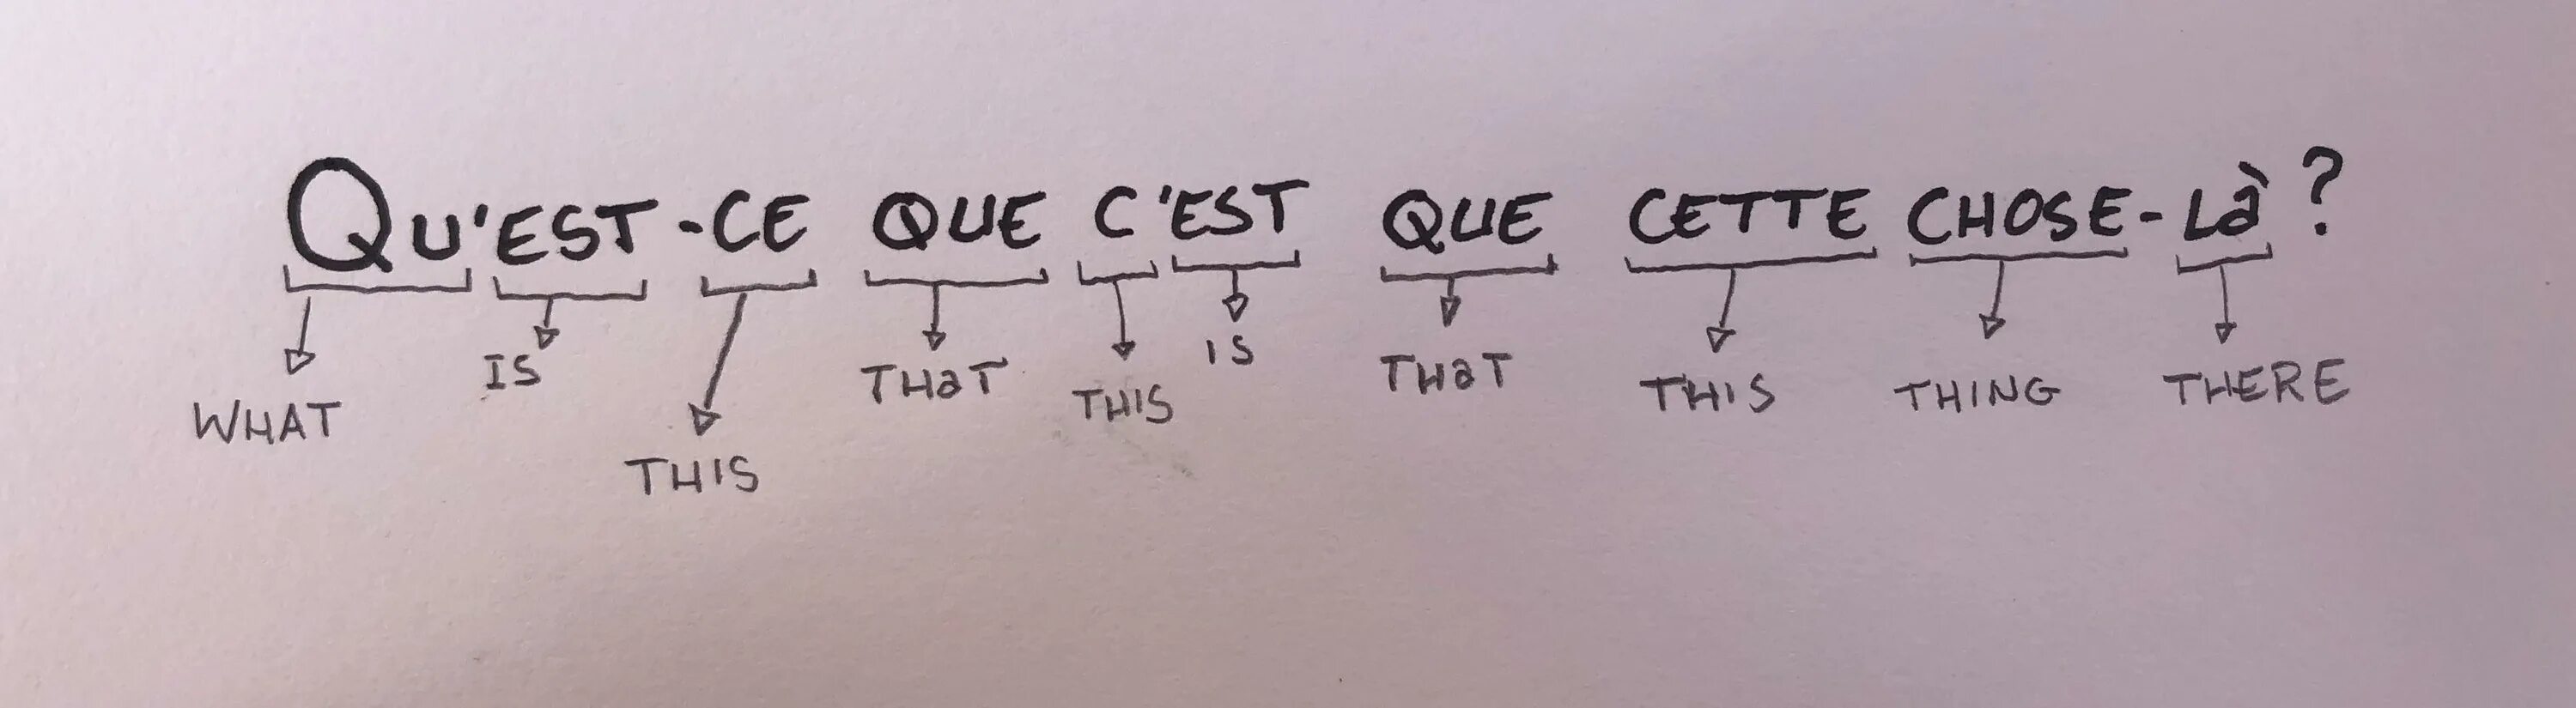 Qu'est-ce que c'est Мем. Вопросы с qu`est-ce que. Est французский. Est ce que перевод.